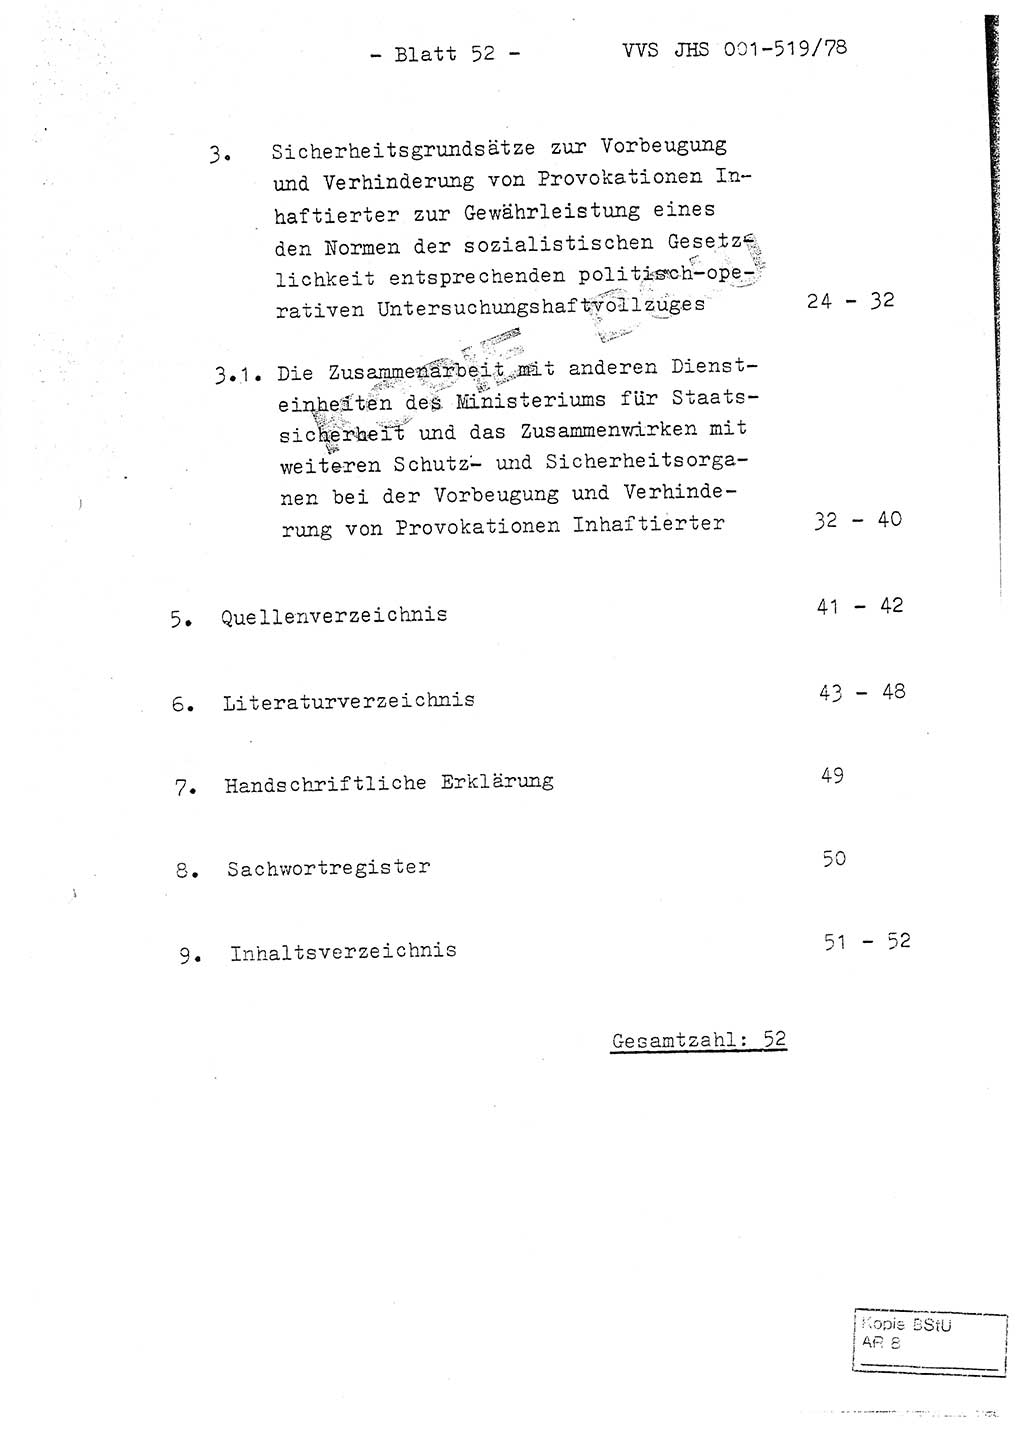 Fachschulabschlußarbeit Hauptmann Alfons Lützelberger (Abt. ⅩⅣ), Ministerium für Staatssicherheit (MfS) [Deutsche Demokratische Republik (DDR)], Juristische Hochschule (JHS), Vertrauliche Verschlußsache (VVS) 001-519/78, Potsdam 1978, Blatt 52 (FS-Abschl.-Arb. MfS DDR JHS VVS 001-519/78 1978, Bl. 52)